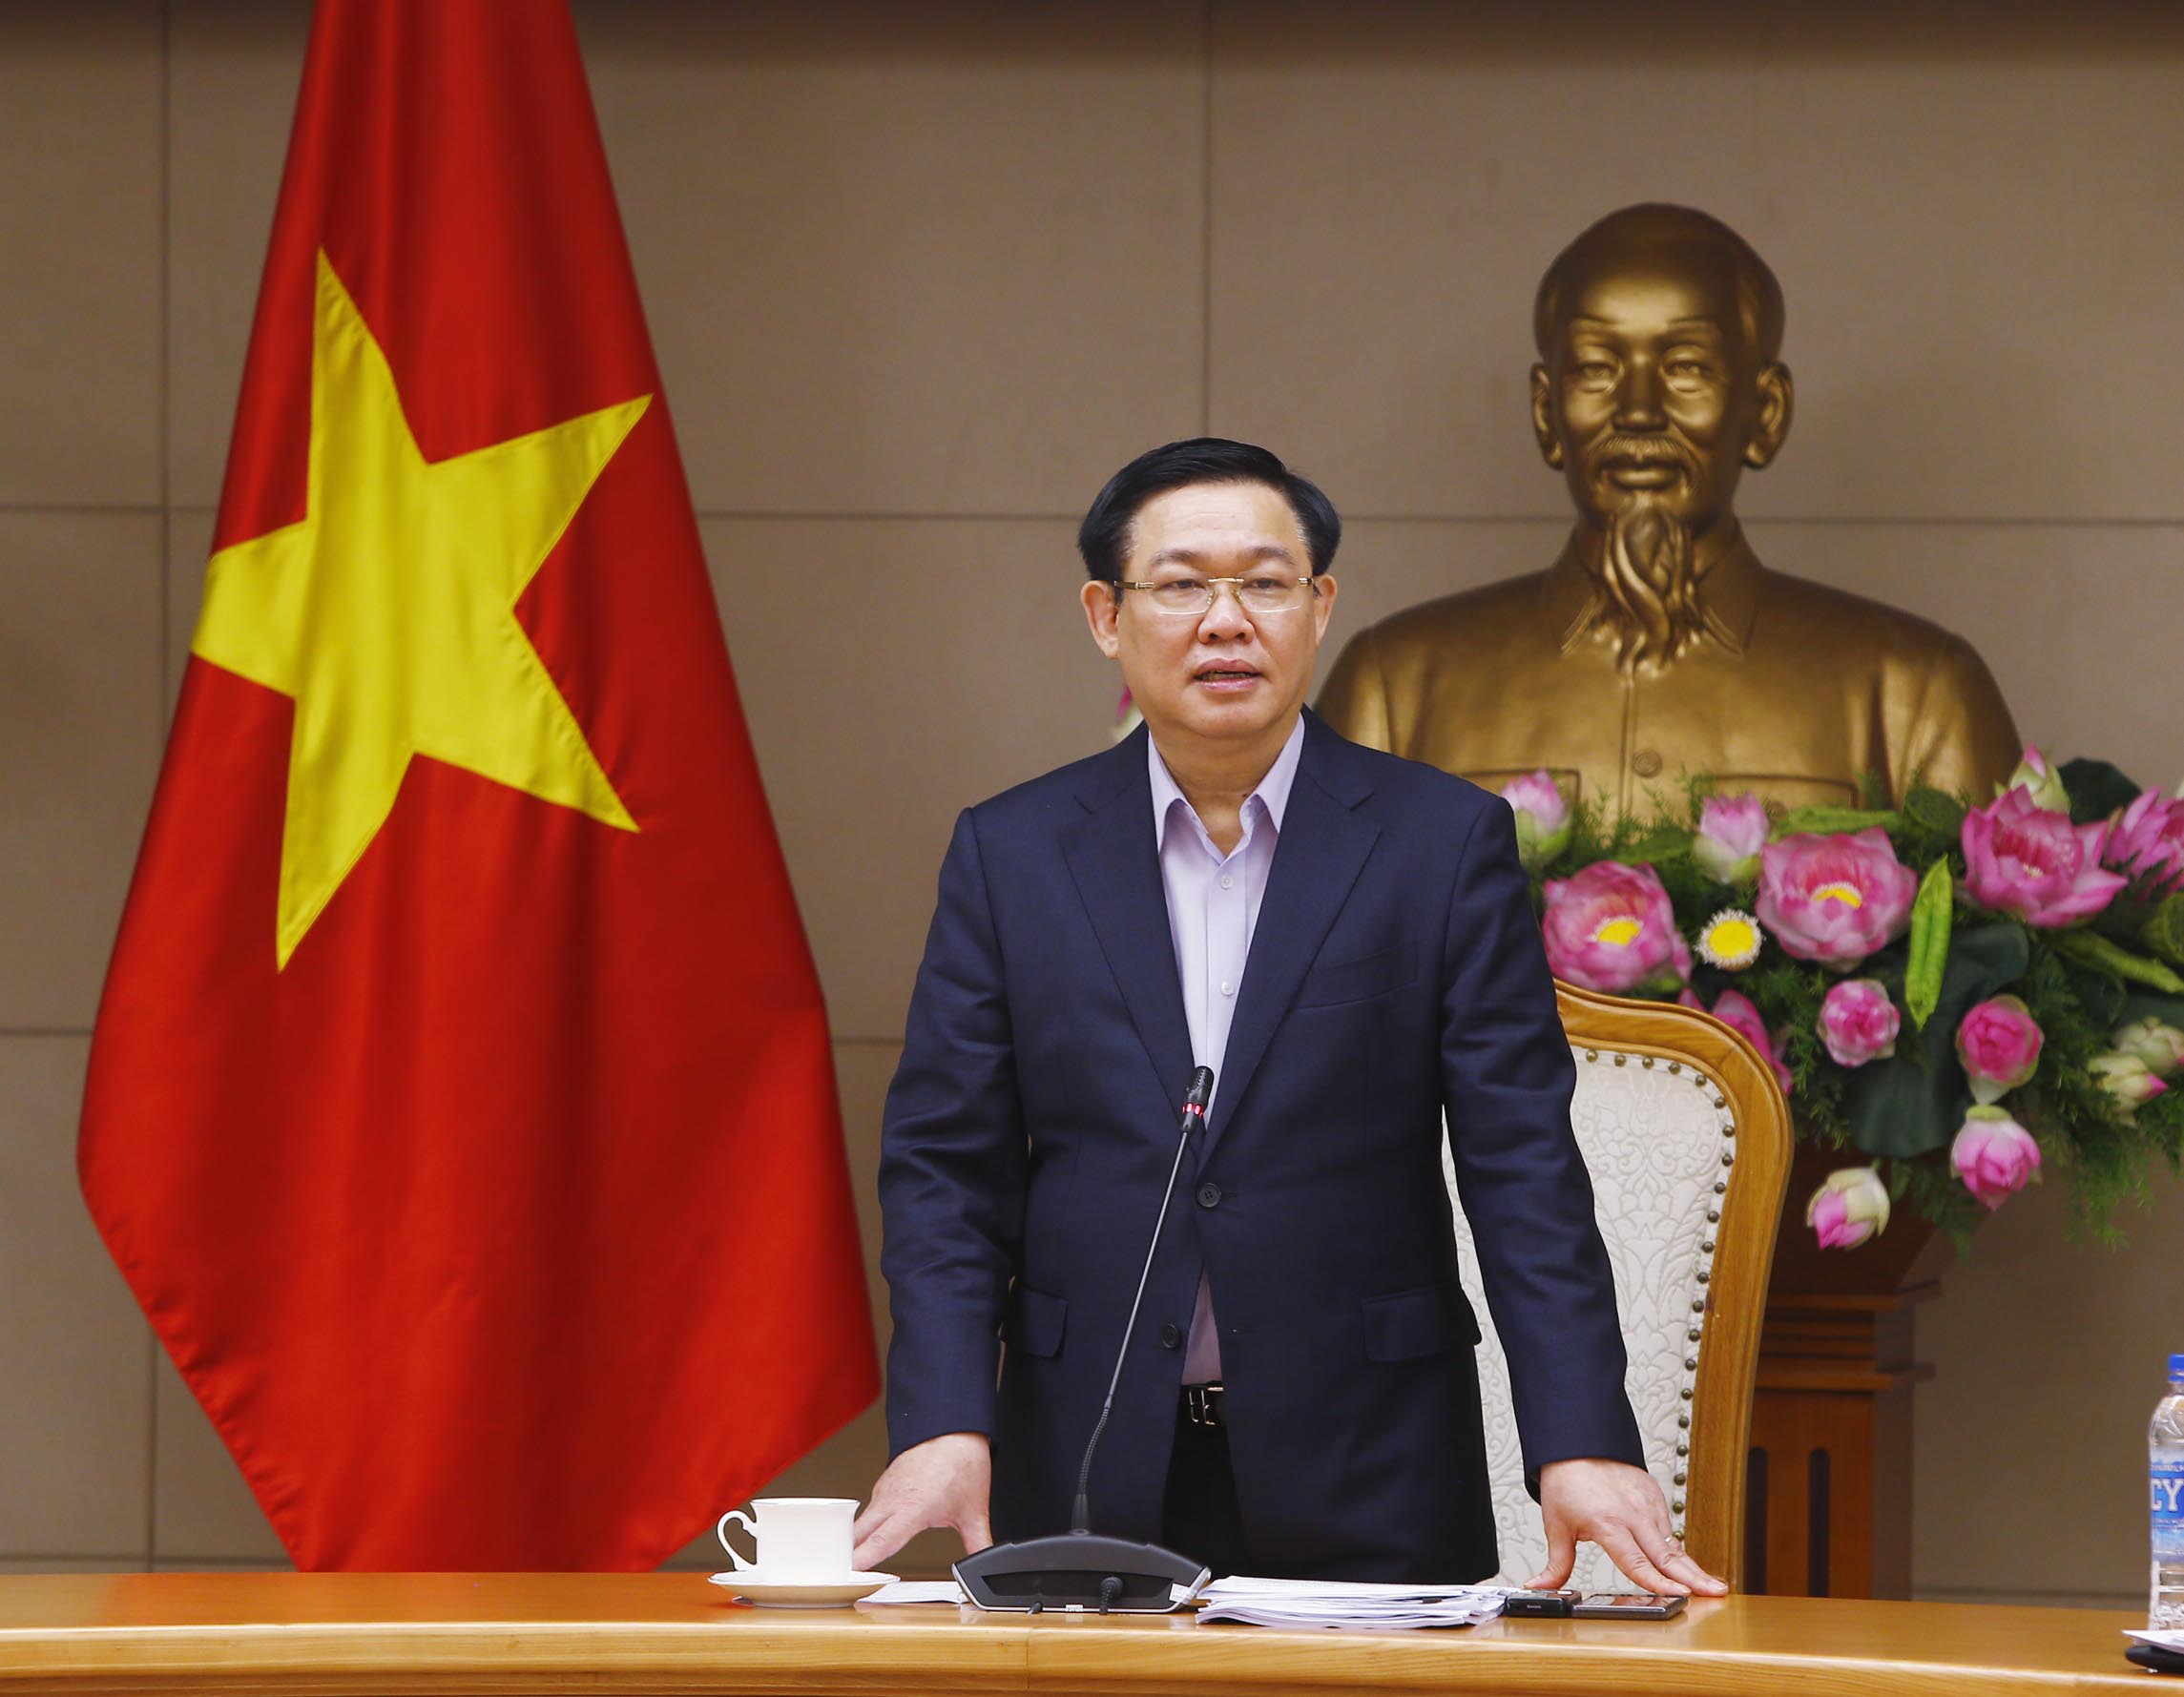 Phó Thủ tướng Vương Đình Huệ phát biểu chỉ đạo cuộc họp. Ảnh: VGP.